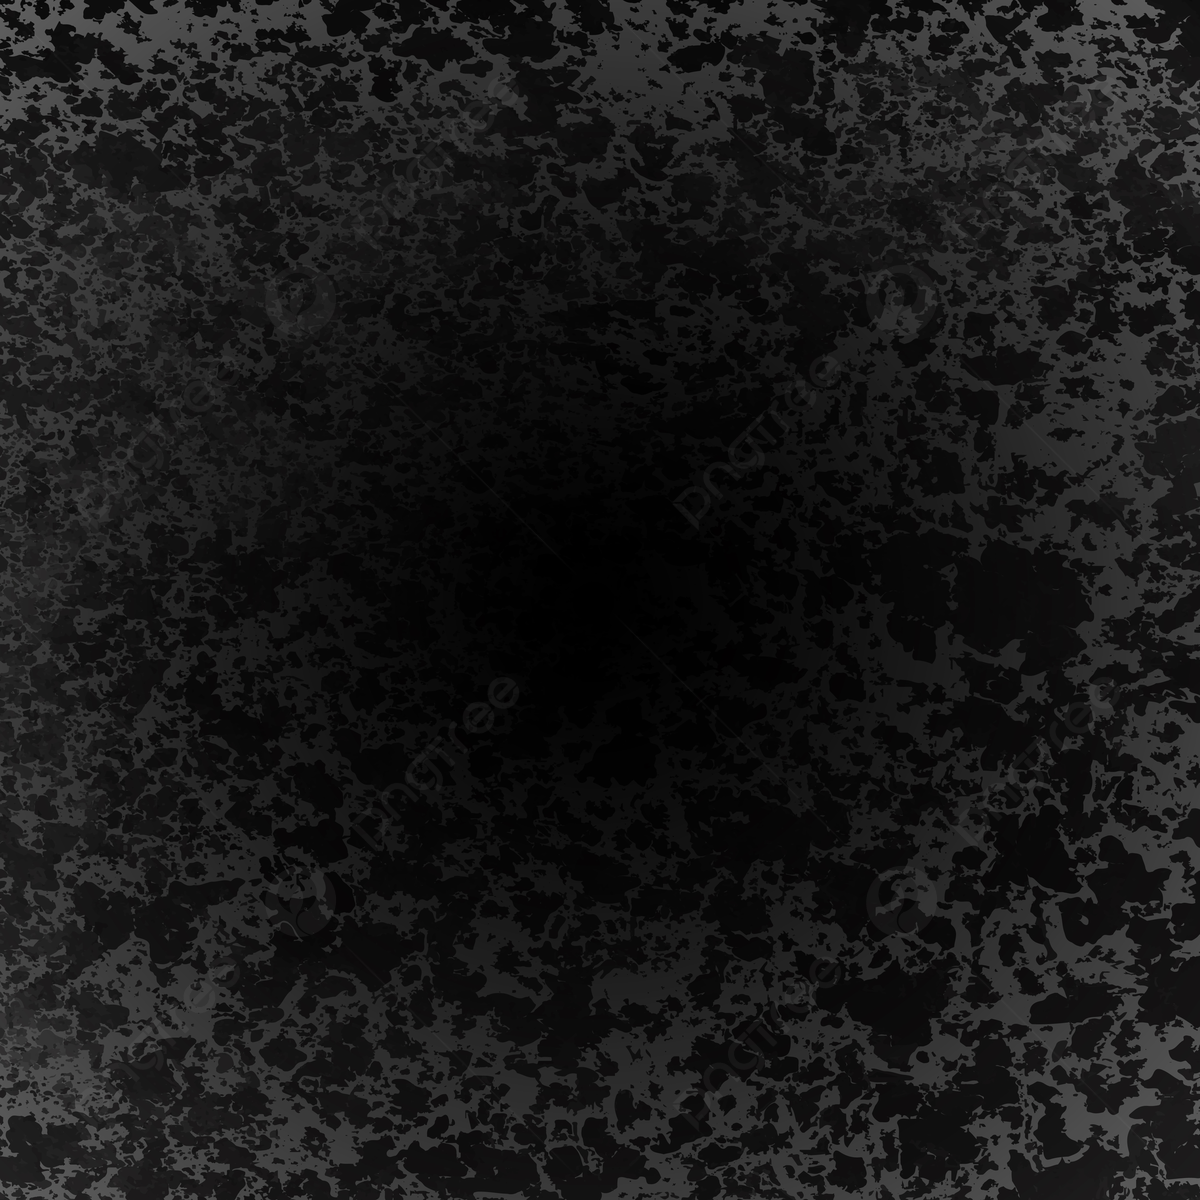 Black Grunge Background 1920X1080